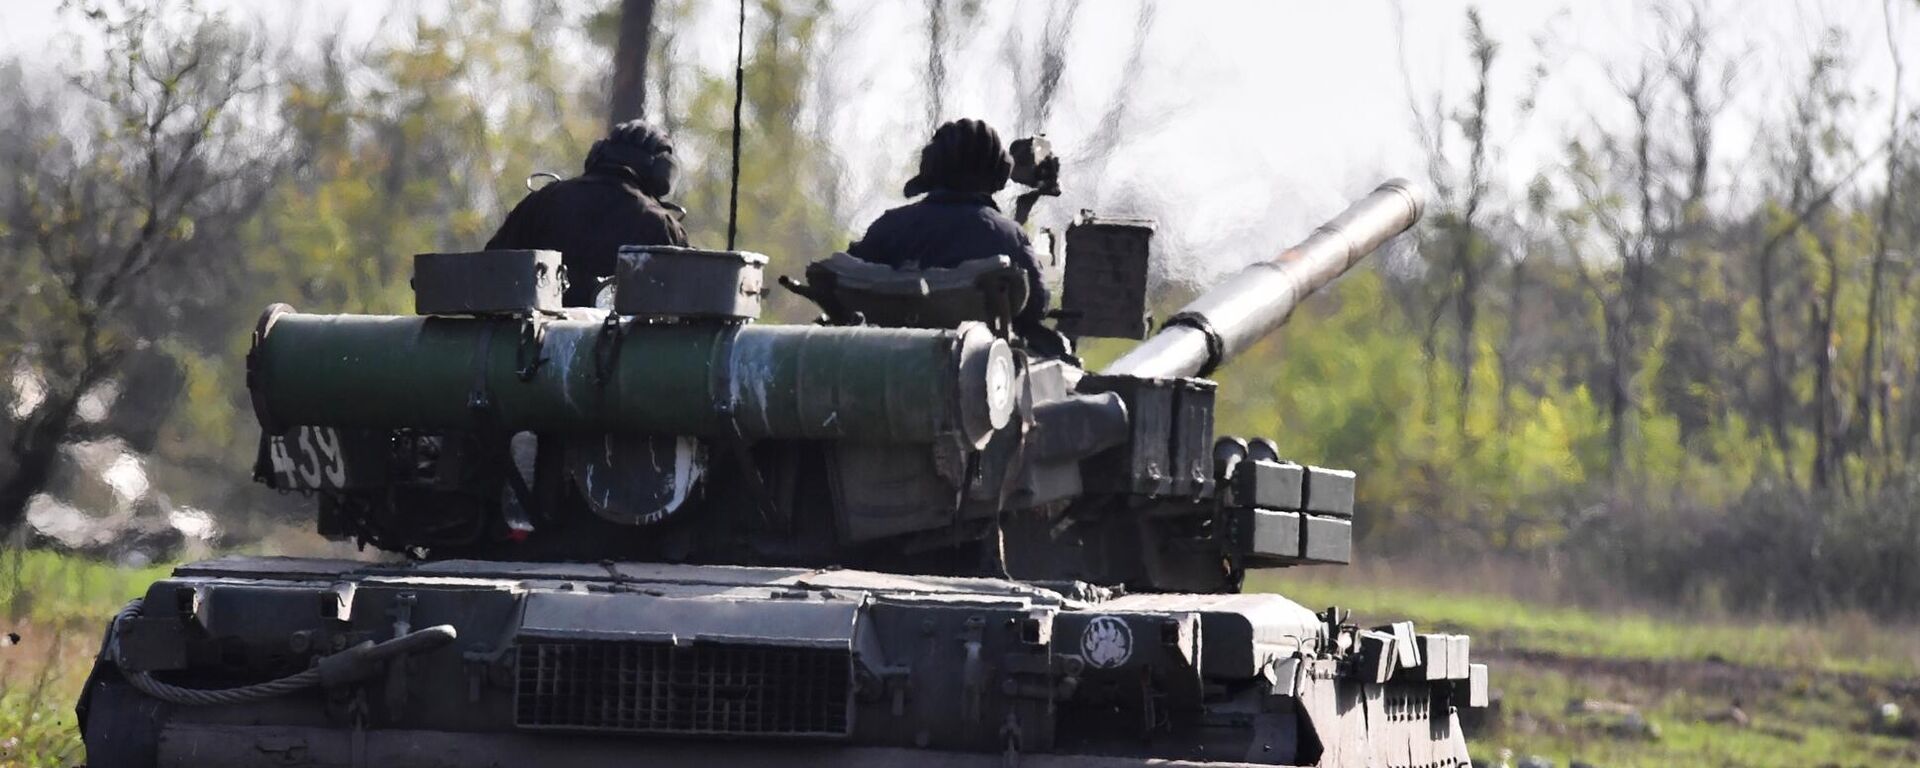 يتم إرسال دبابة تي-80 لإطلاق النار الحي في مواقع القوات المسلحة لأوكرانيا في منطقة دونيتسك - سبوتنيك عربي, 1920, 07.11.2022